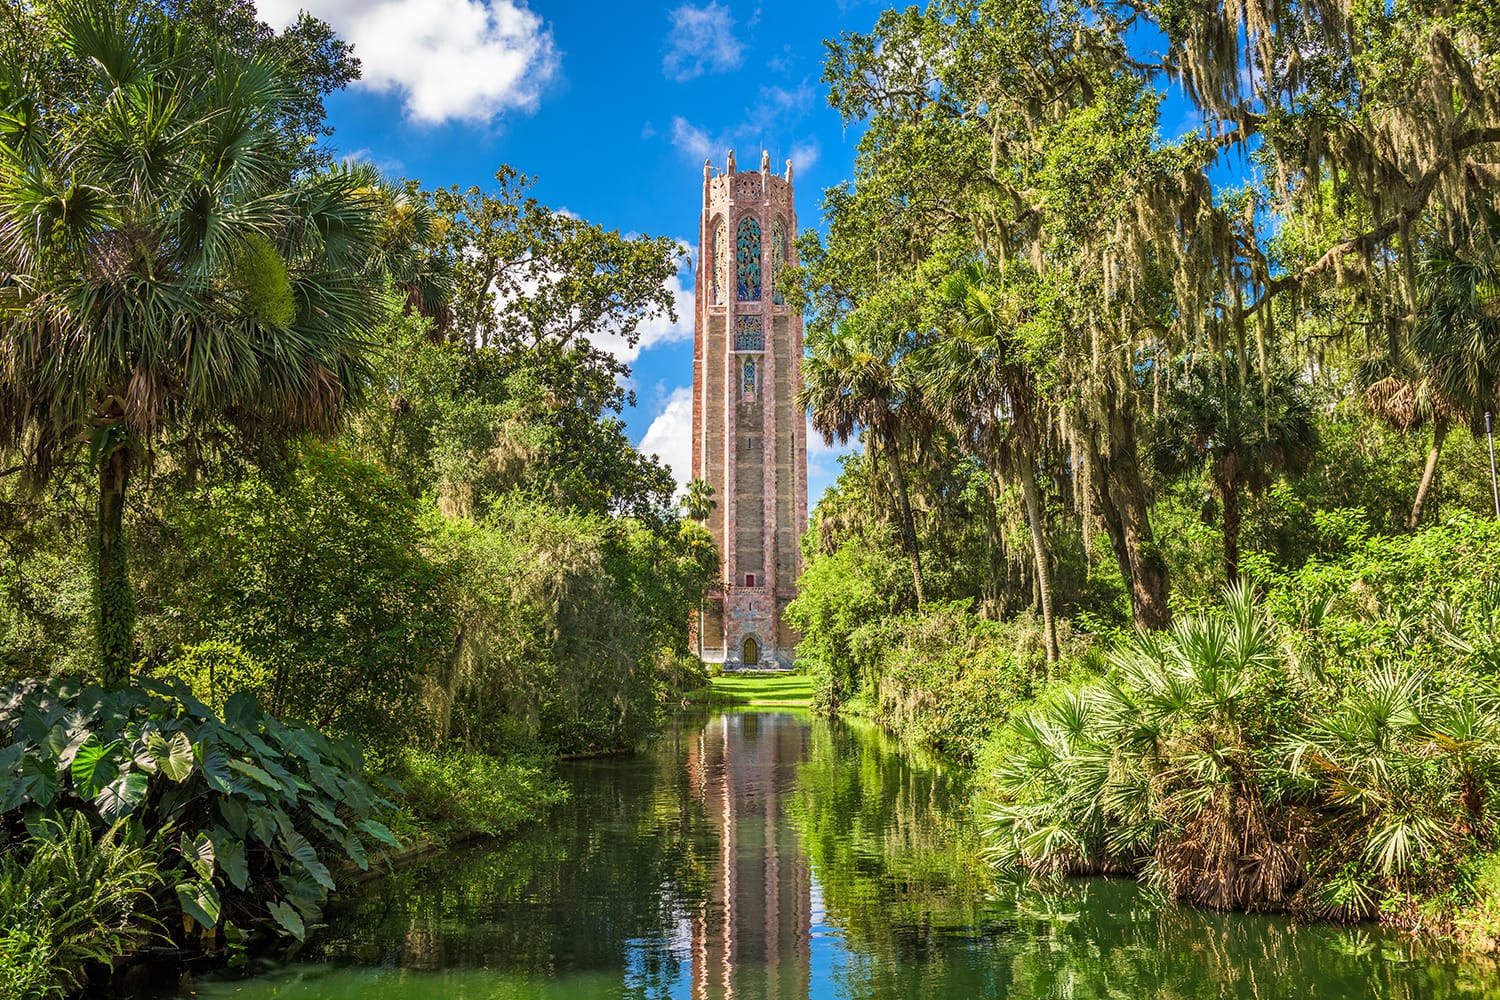 Bok Tower Gardens in Lake Wales, Florida, USA.